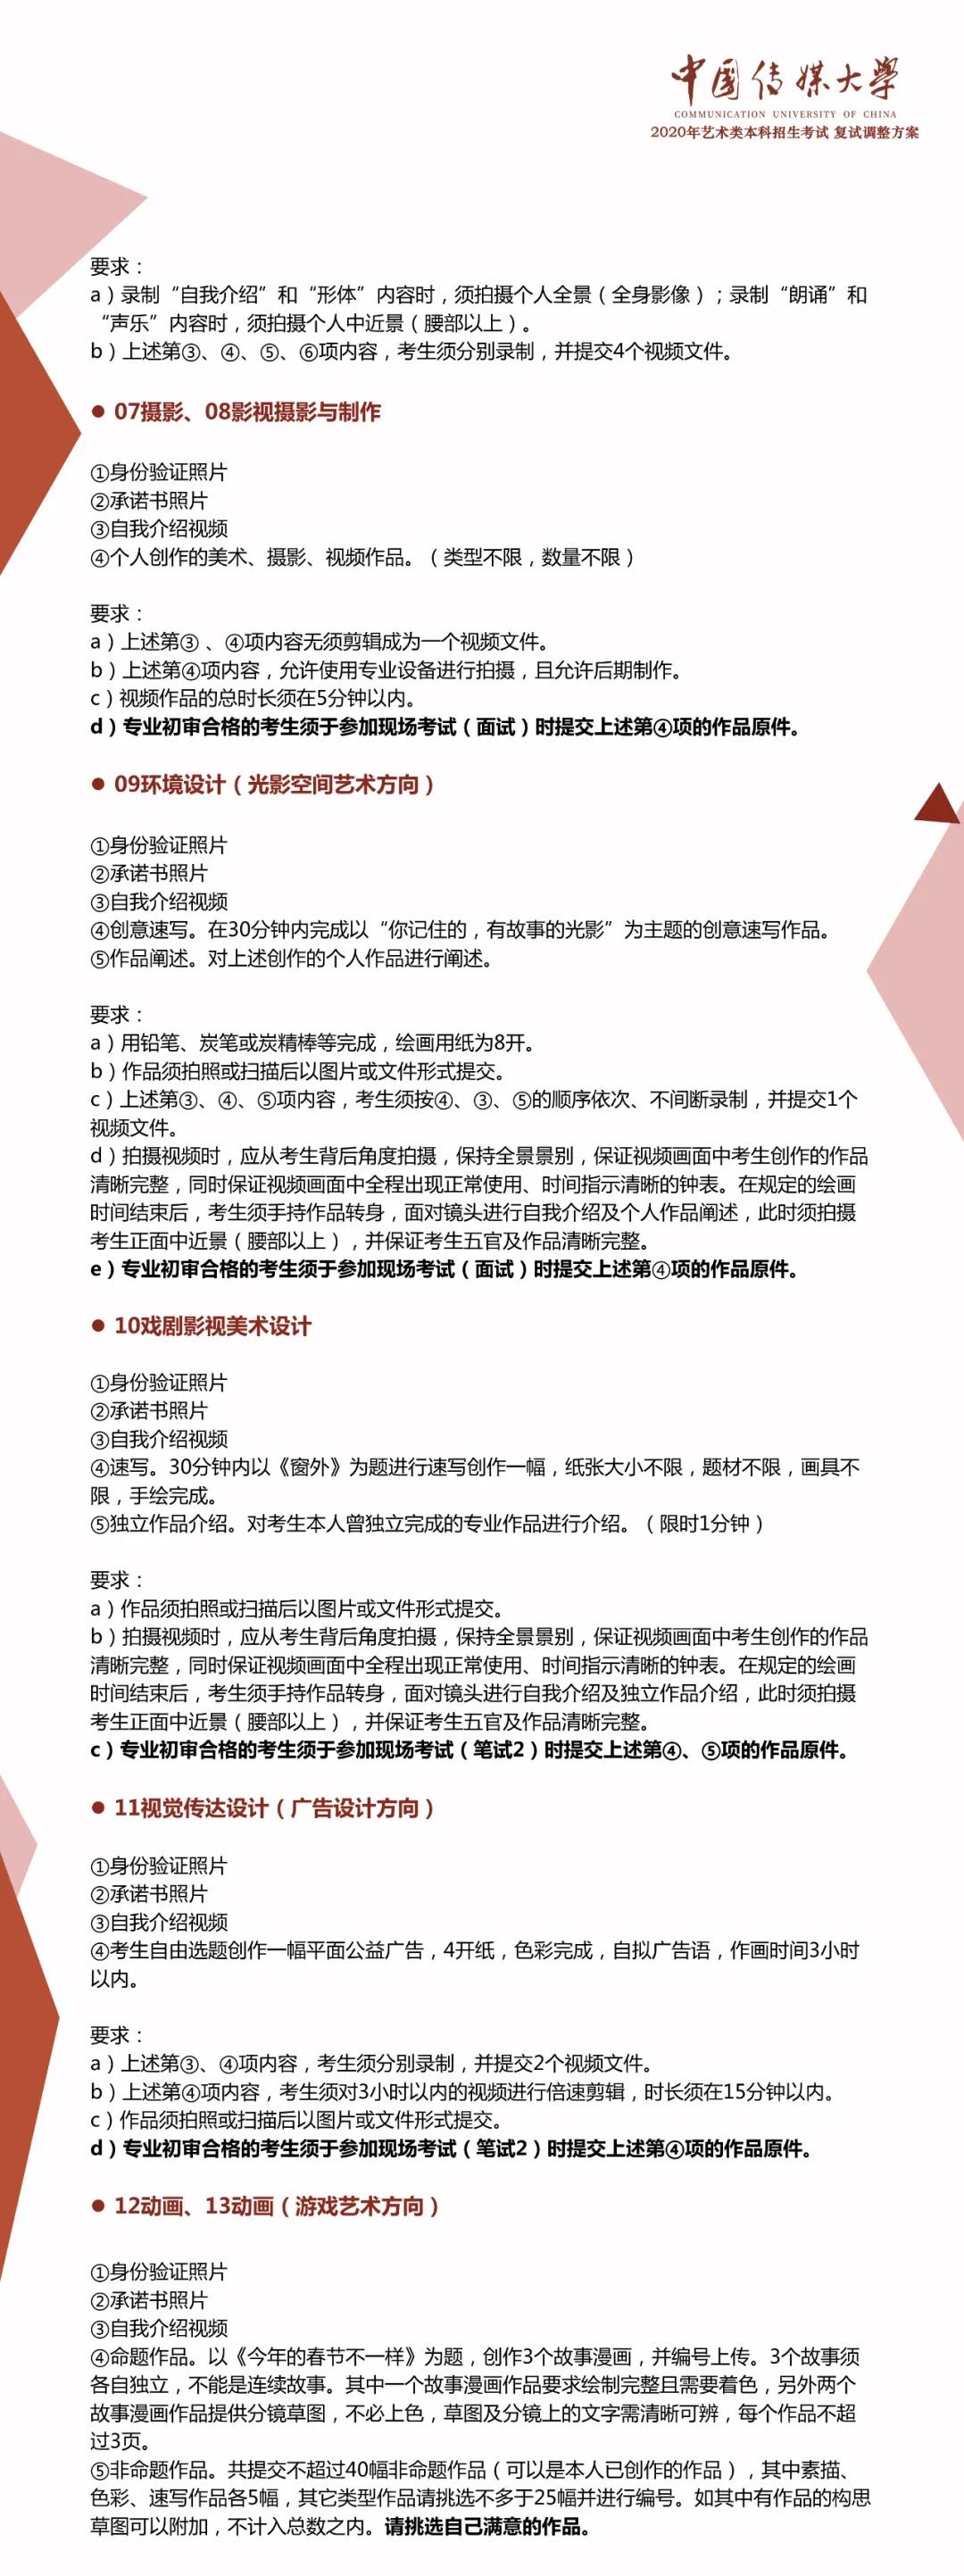 中国传媒大学2020年艺术类专业复试方案调整的公告